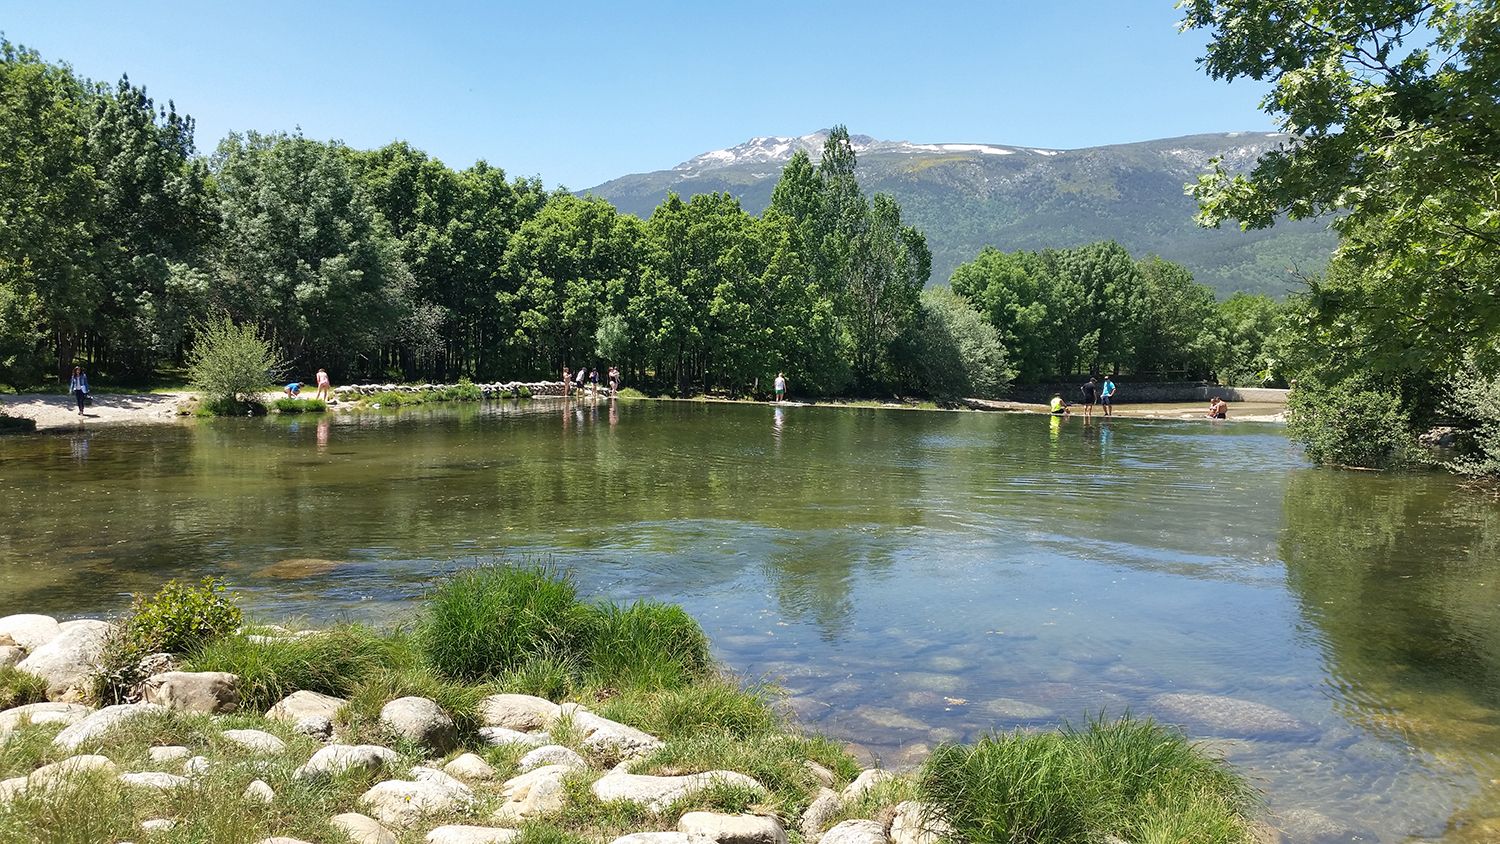 Las mejores piscinas naturales, pantanos o pozas donde refrescarse muy cerca de Madrid